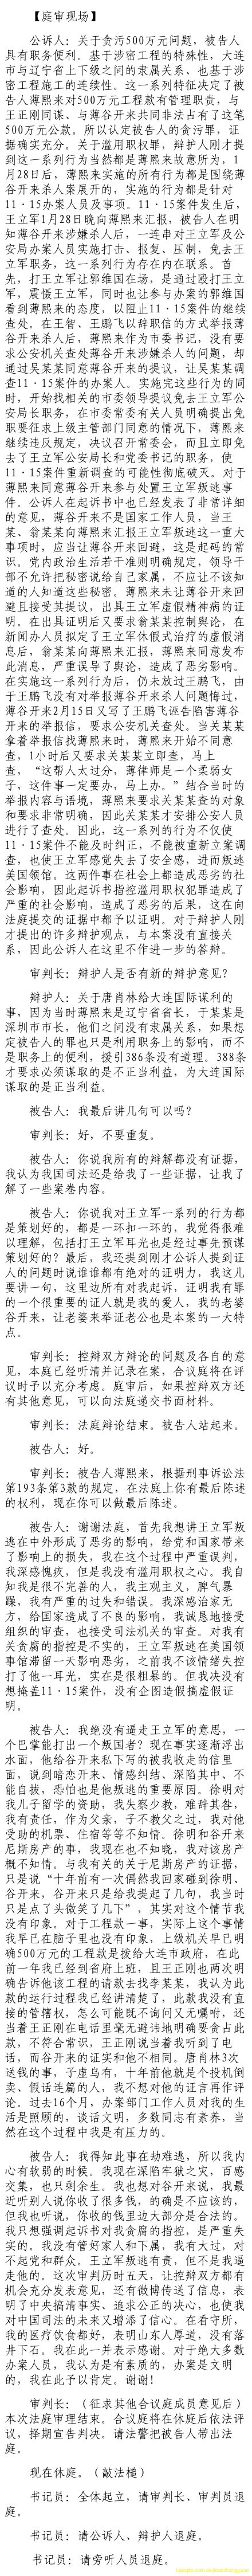 济南市中级法院官方微博公布的8月26日庭审现场记录（7）